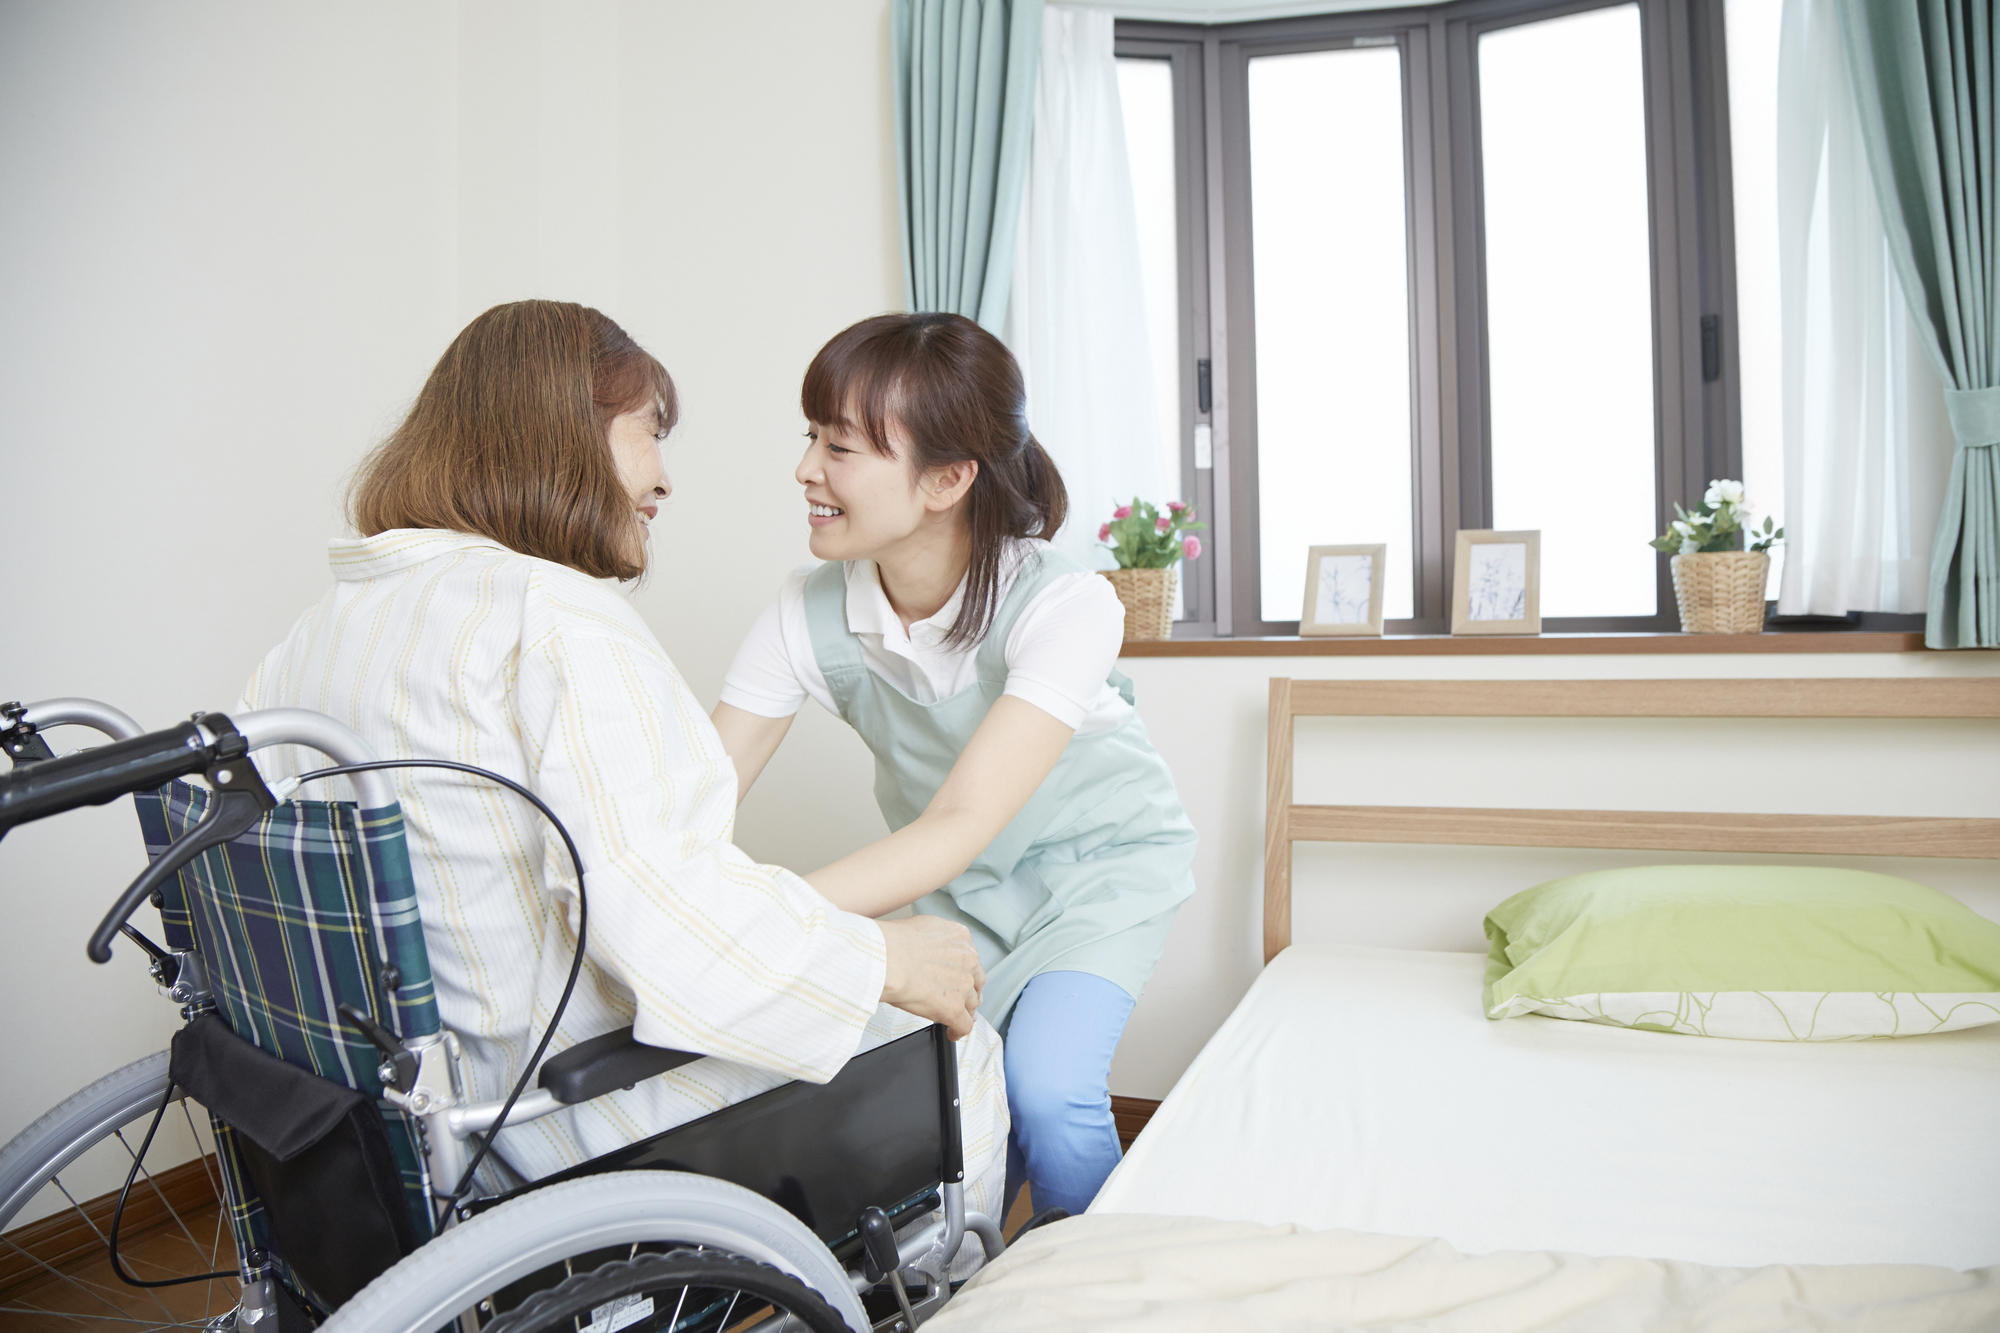 車椅子からベッドへの移乗介助で気をつけるべき6つの注意点 片麻痺 半身まひ のケースの解説付き 介護のコラム 老人ホーム検索 探しっくす